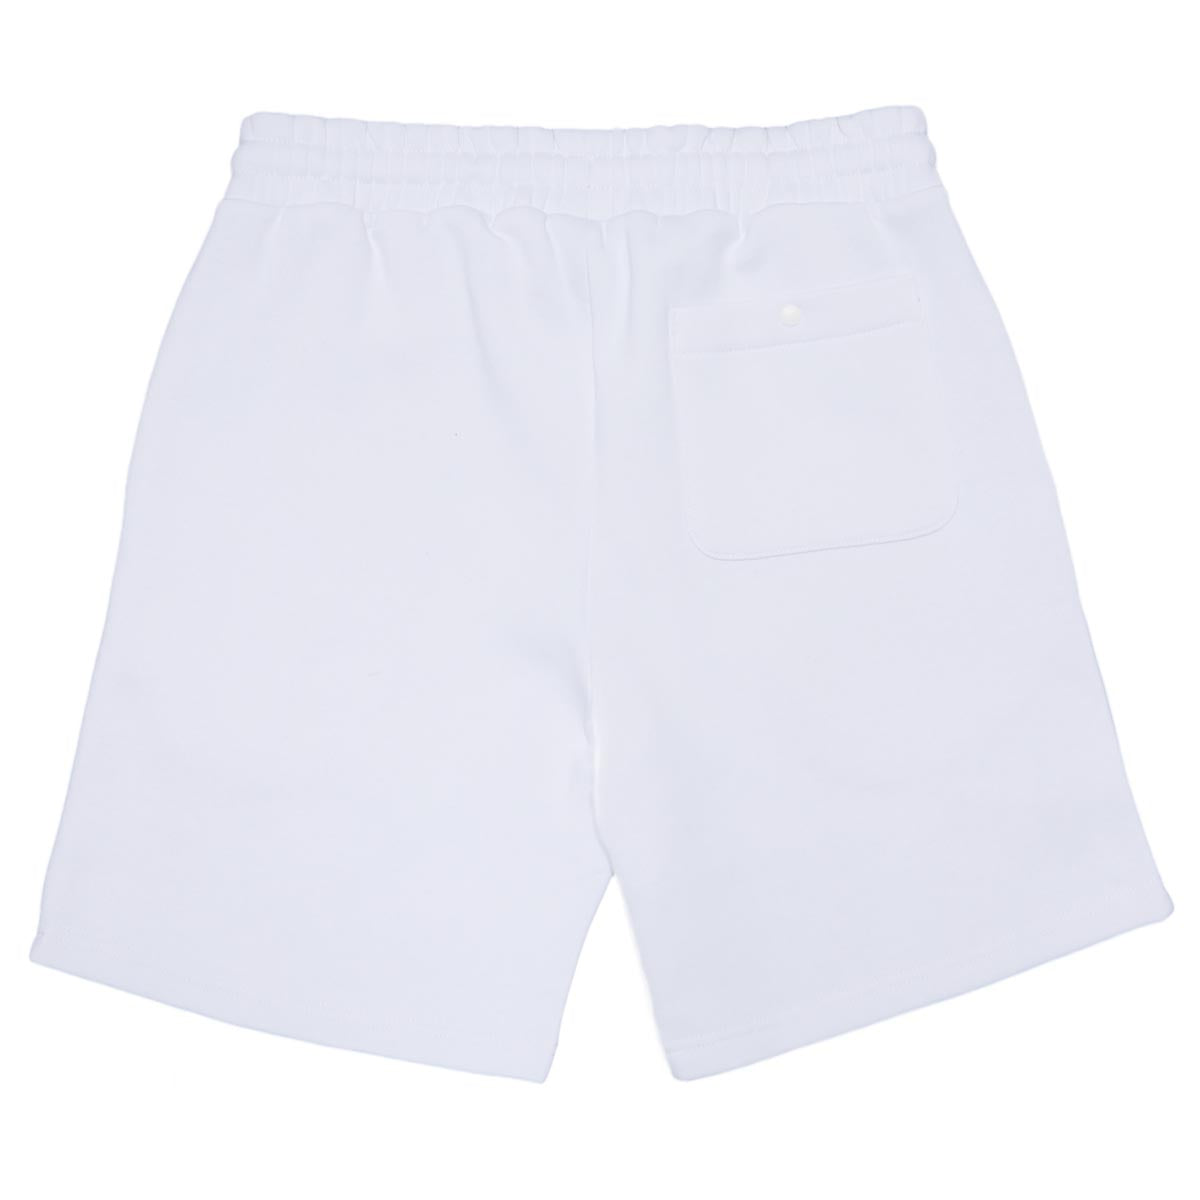 DGK Fire Blossom Fleece Shorts - White image 2